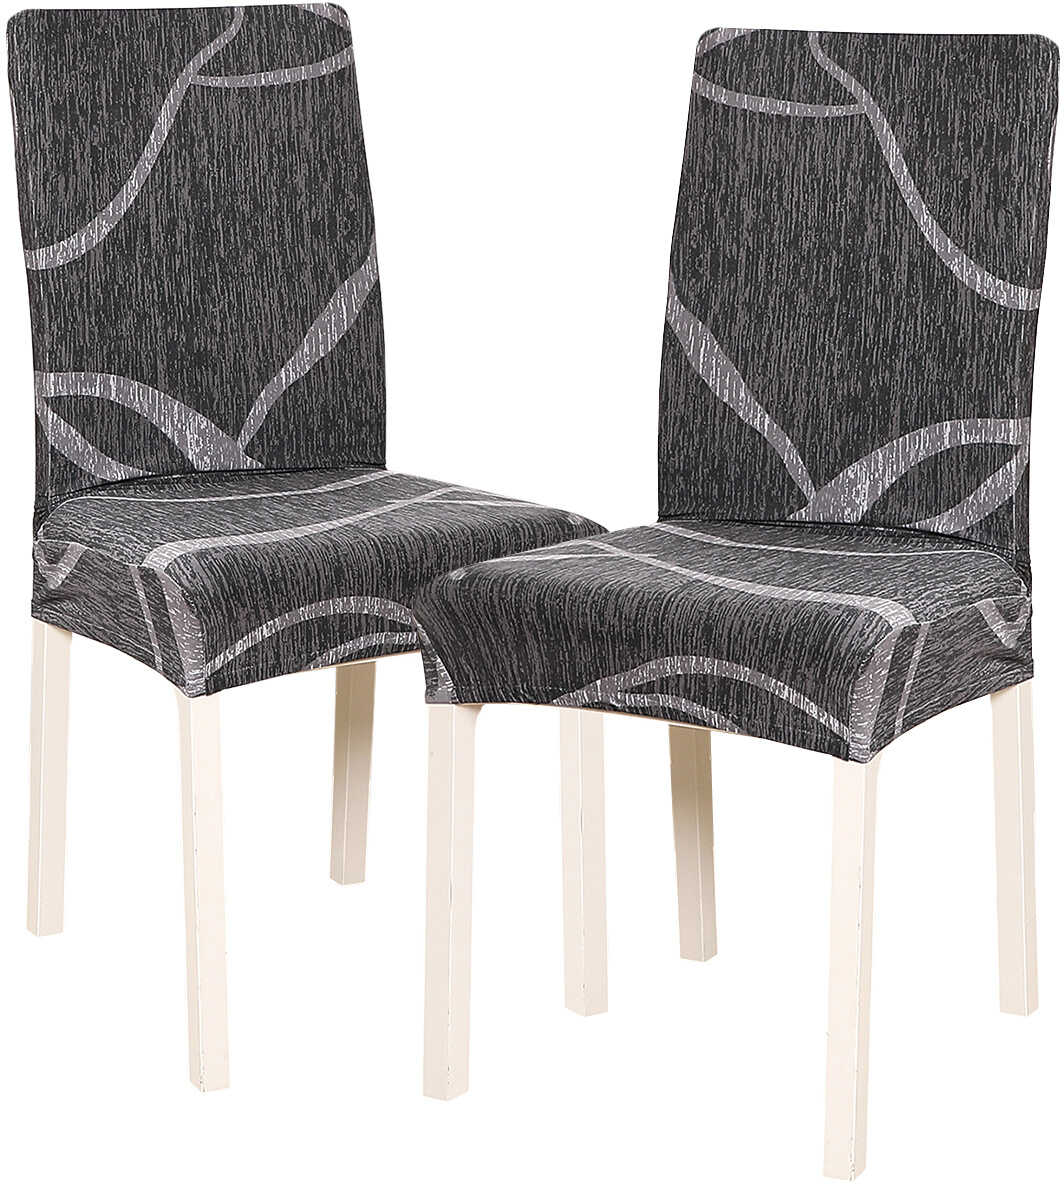 4Home Pokrowiec elastyczny na krzesło Slate 45 - 50 cm, komplet 2 szt.